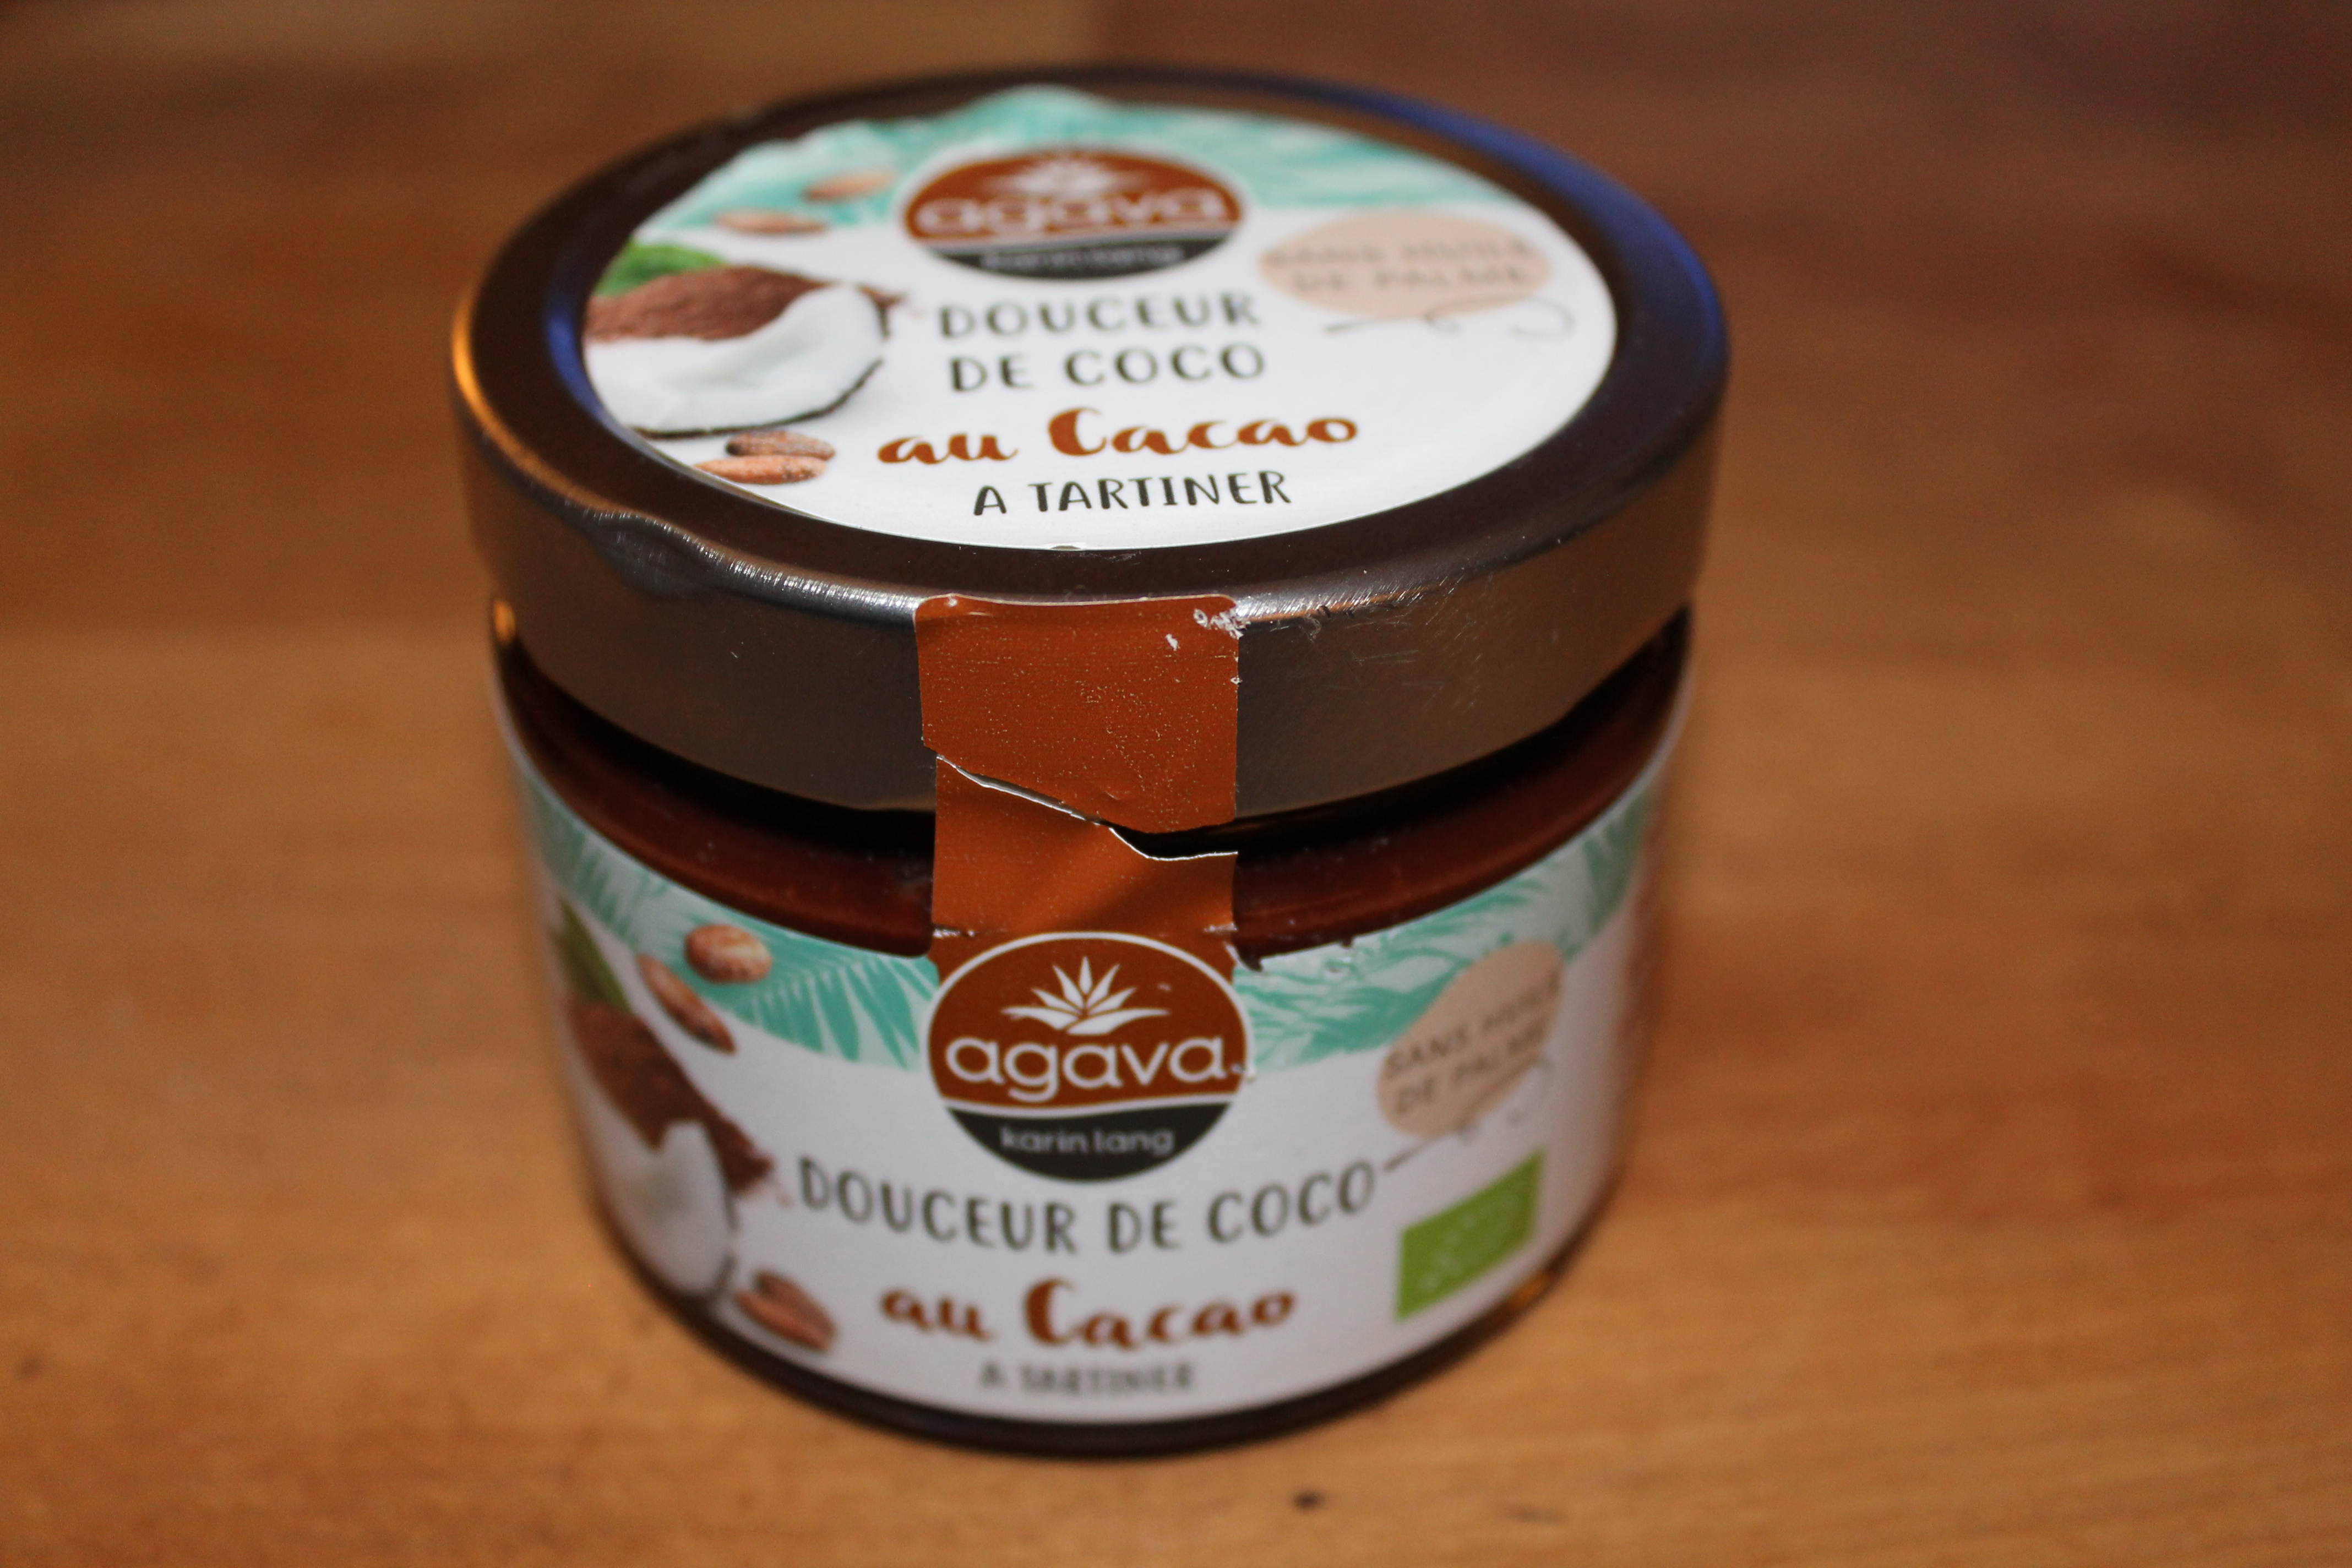 AGAVA - KARIN LANG Douceur de Coco Cacao 